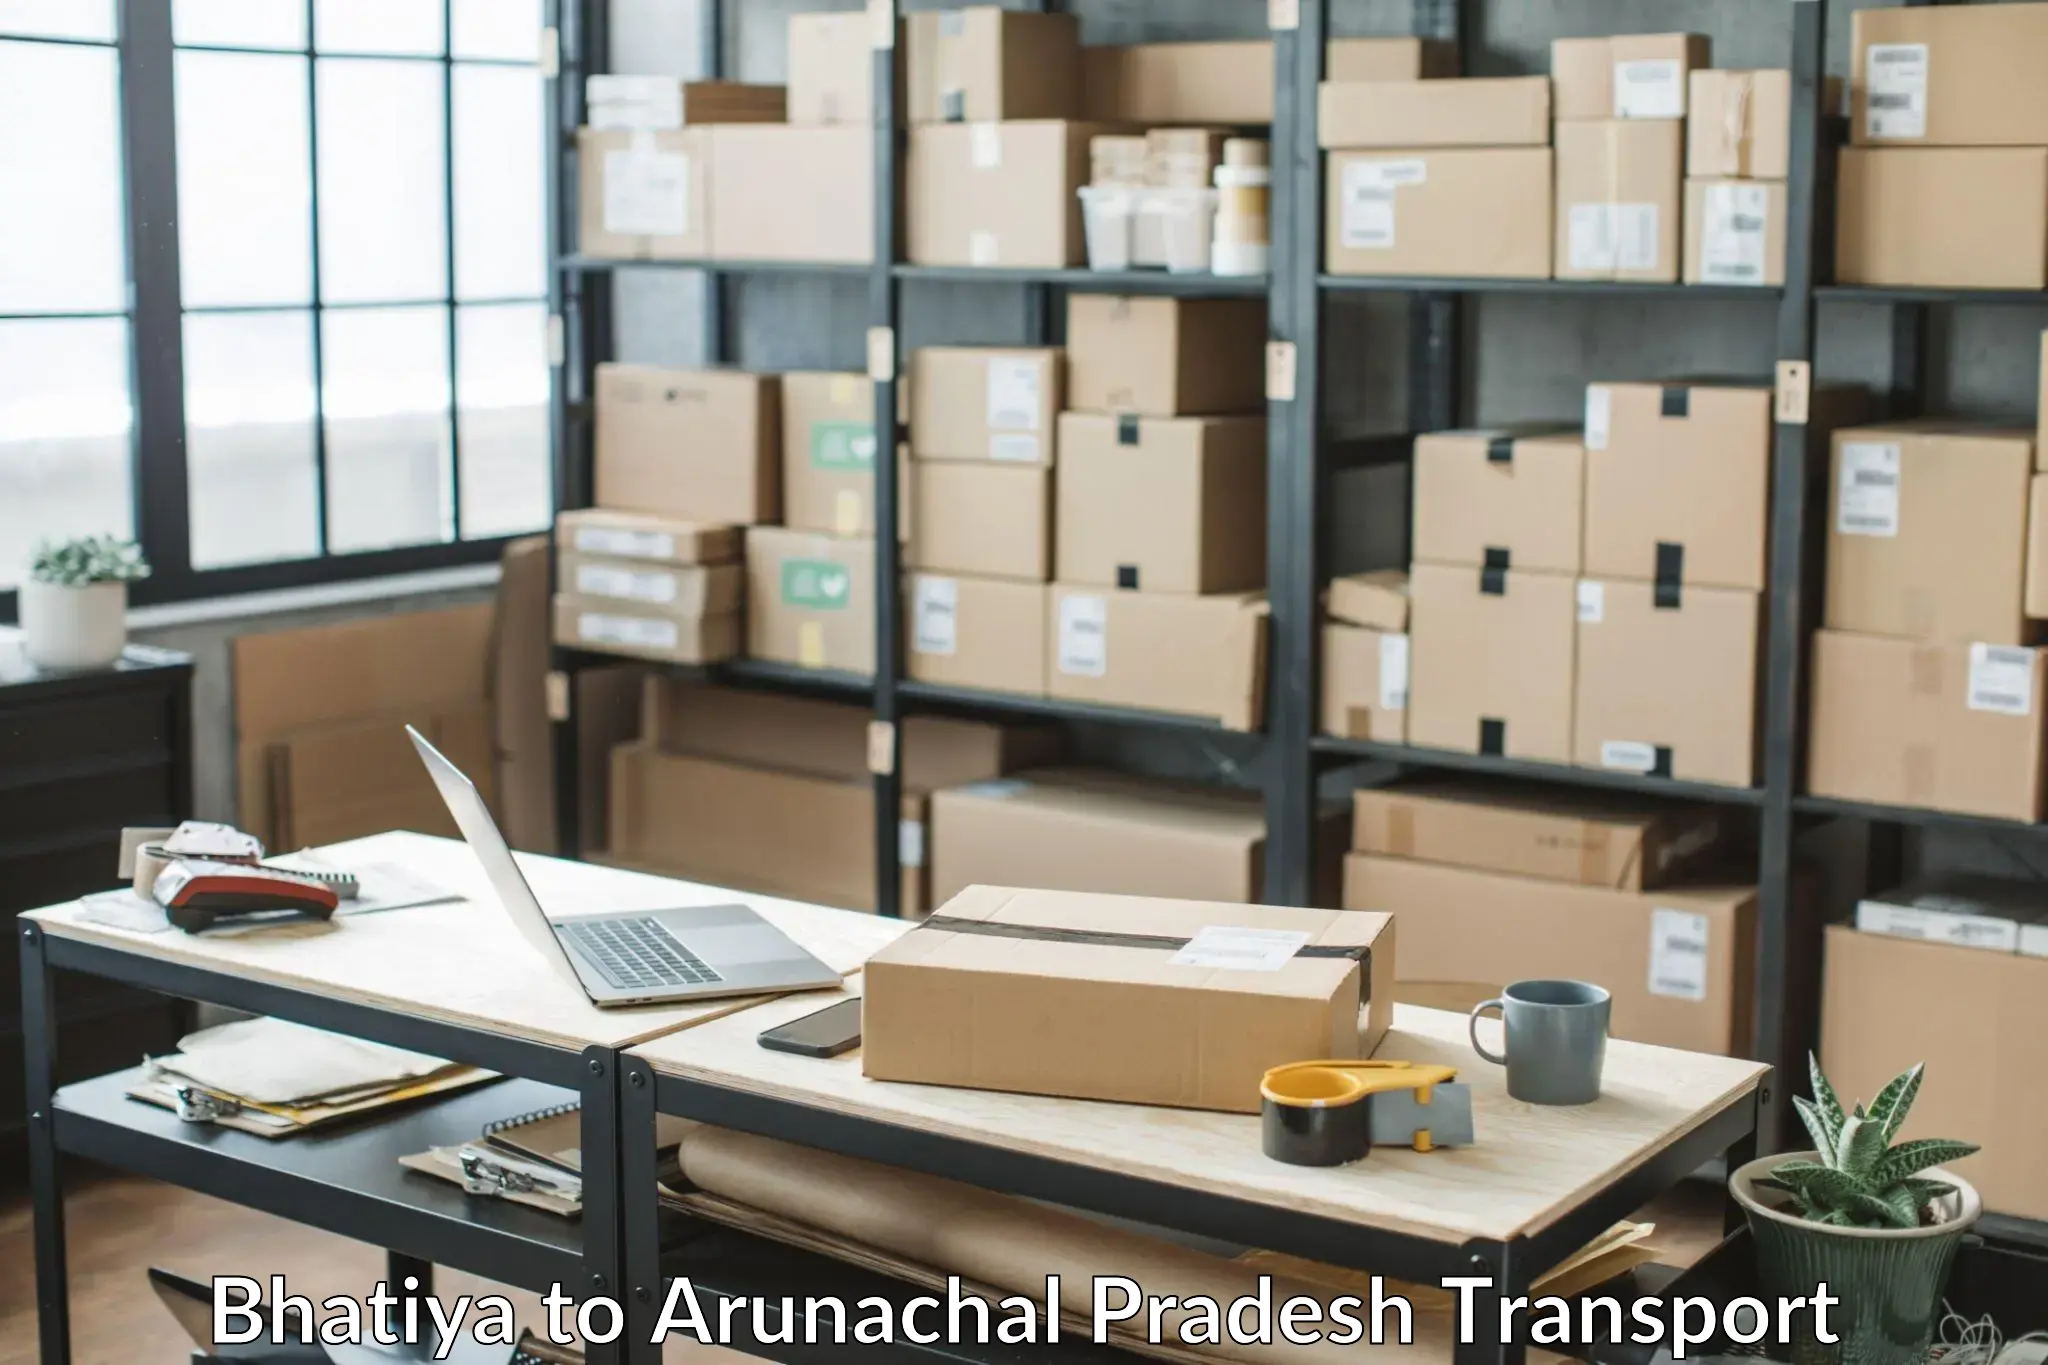 Air freight transport services Bhatiya to Arunachal Pradesh